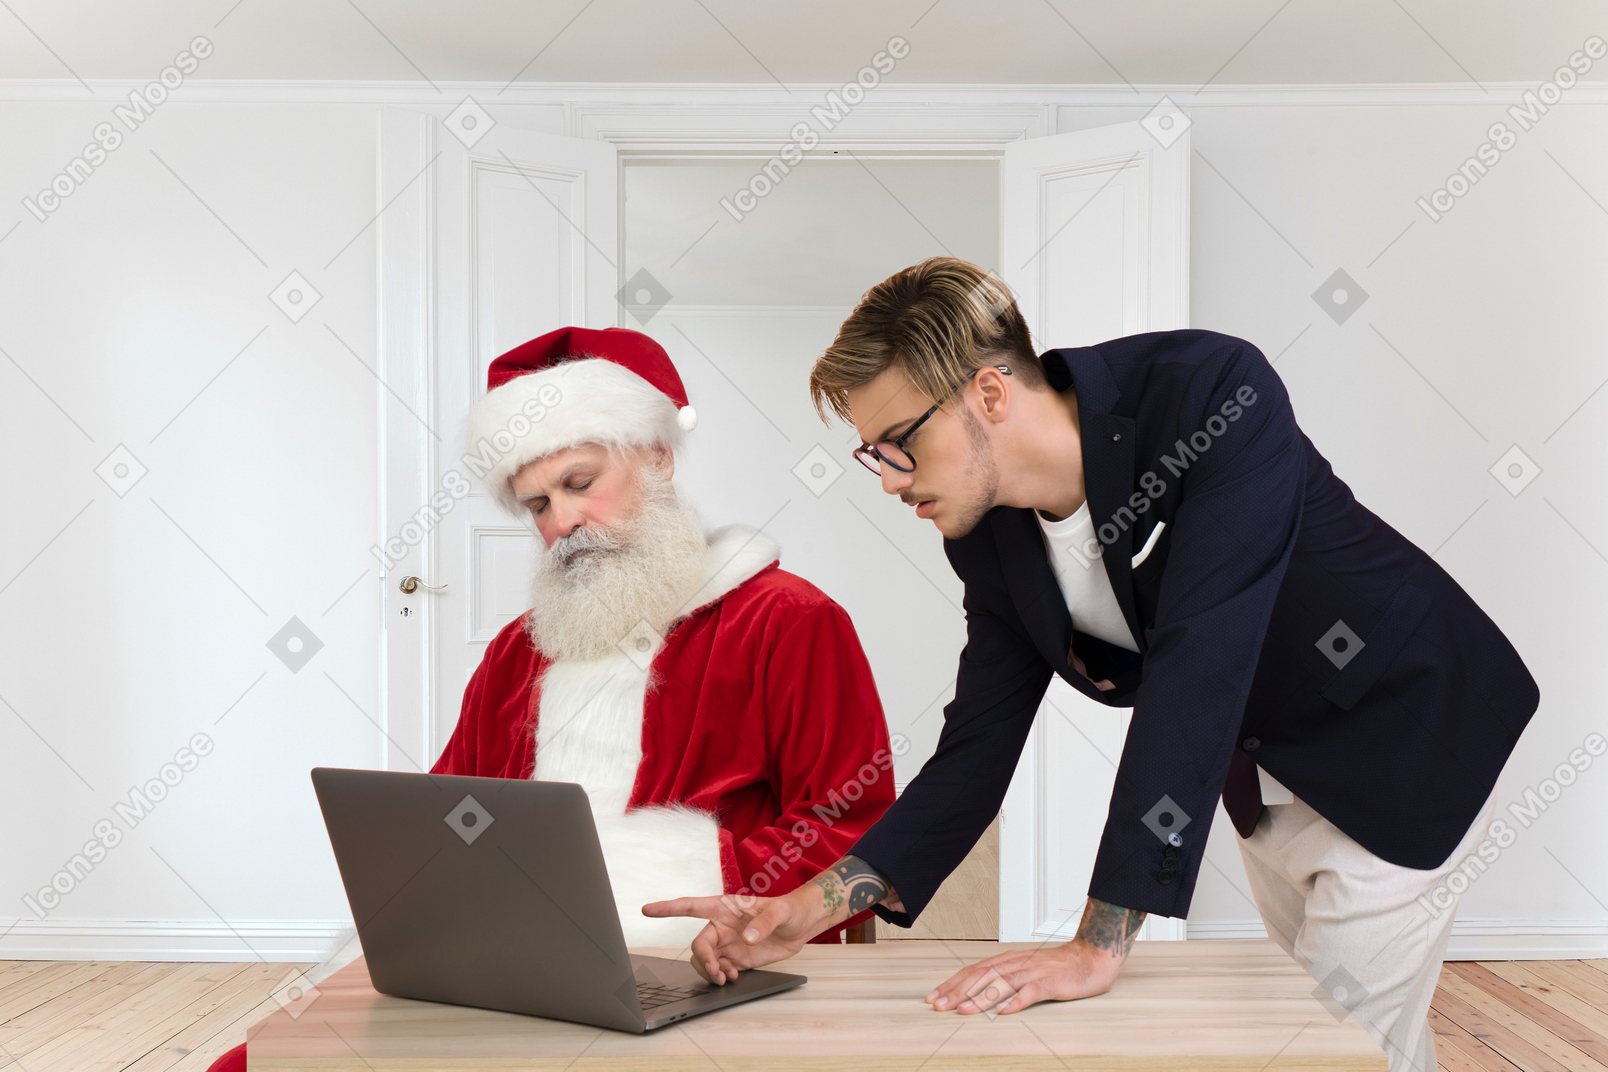 Papai noel está cochilando enquanto um jovem está verificando algumas informações em um computador